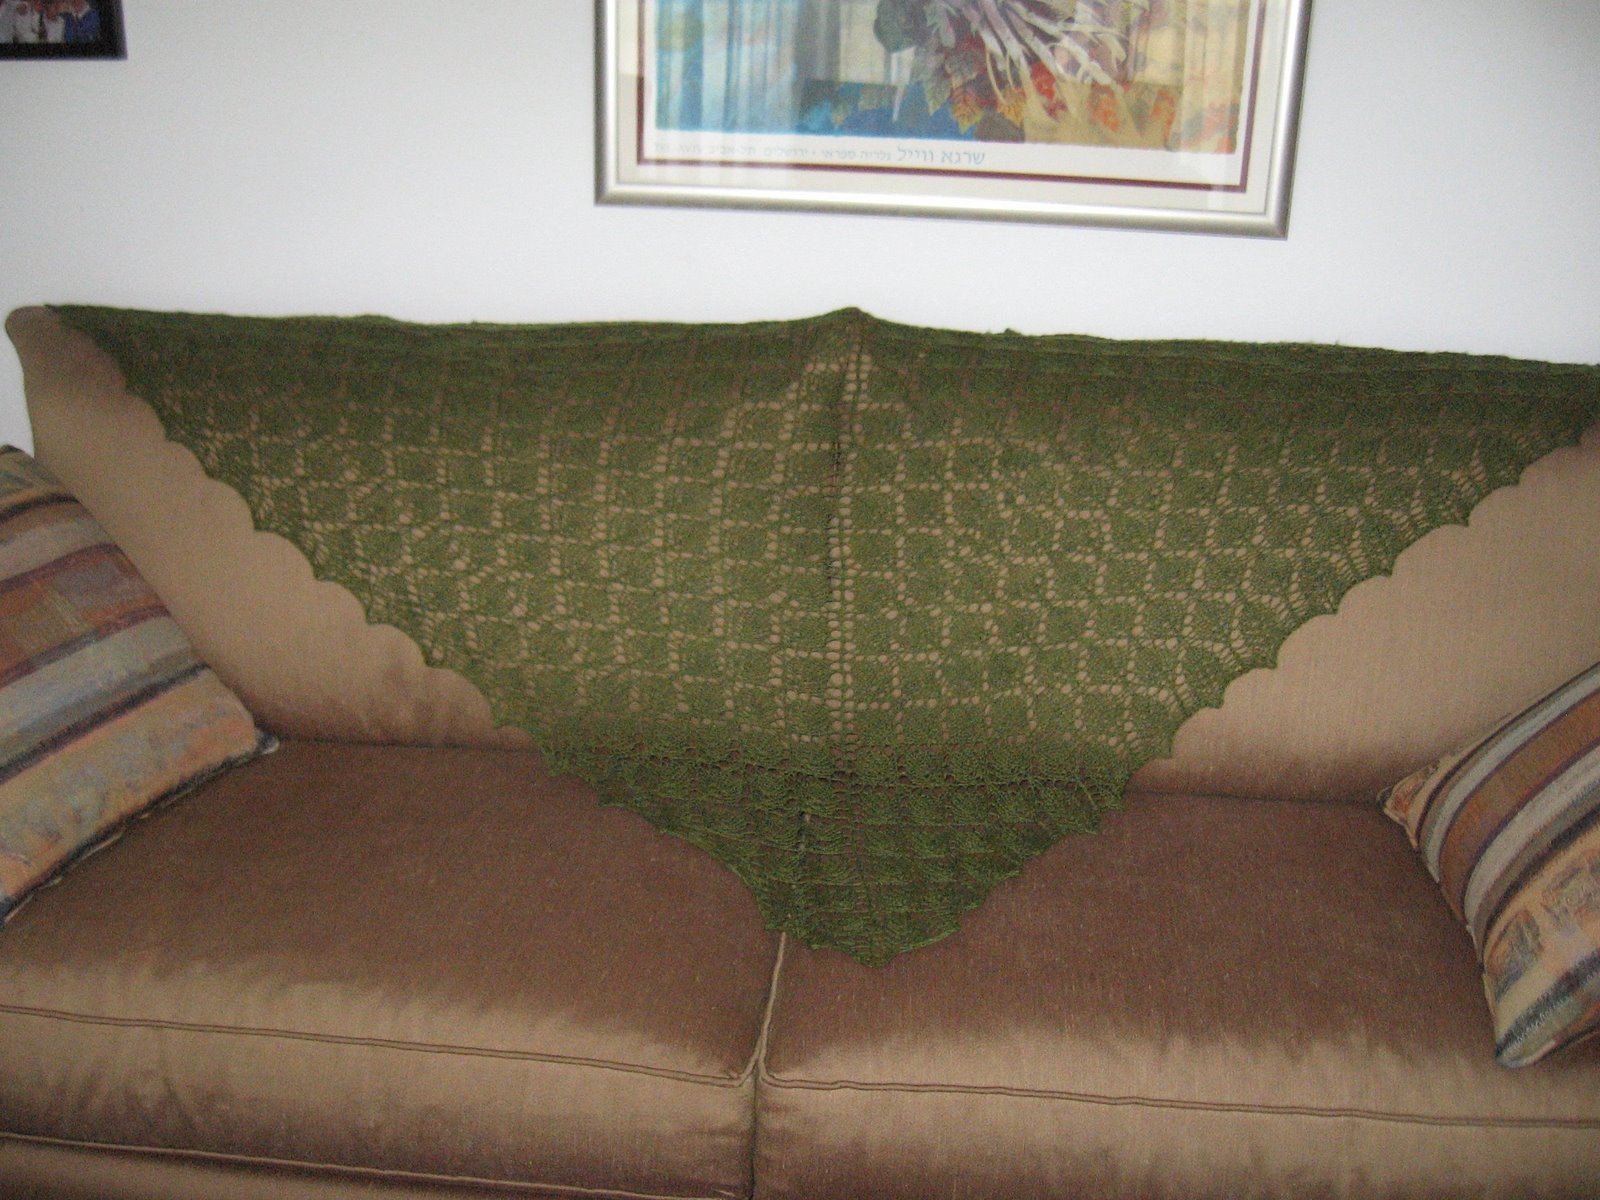 [shawl+on+sofa.jpg]